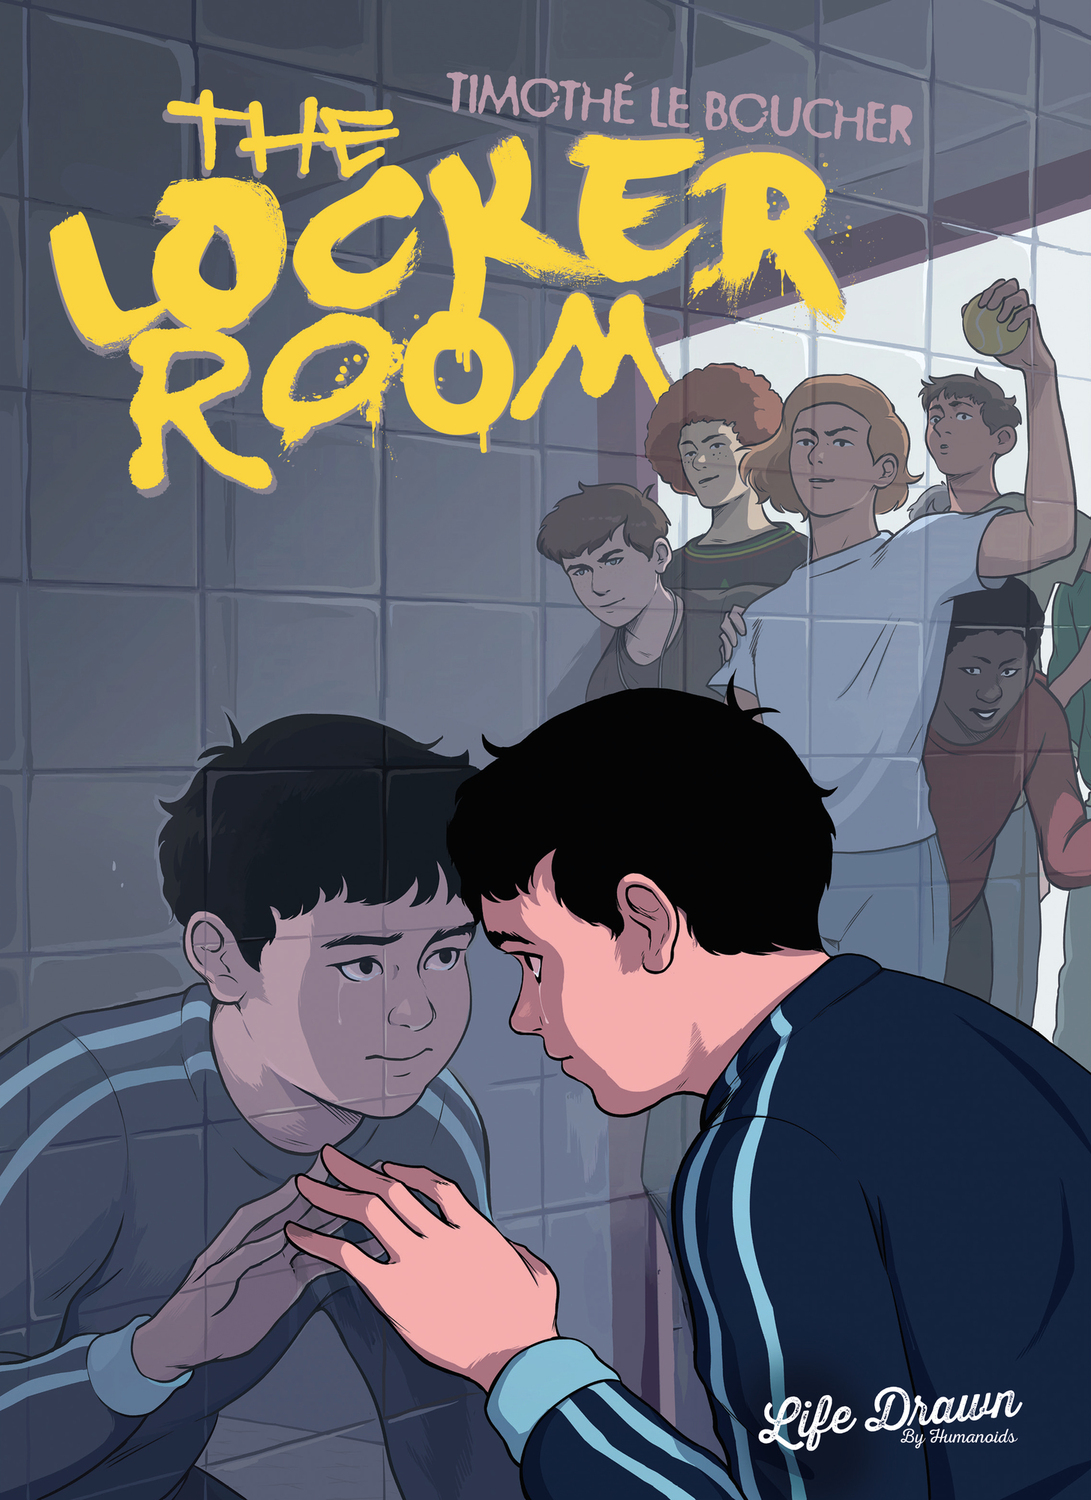 Boys In The Locker Room